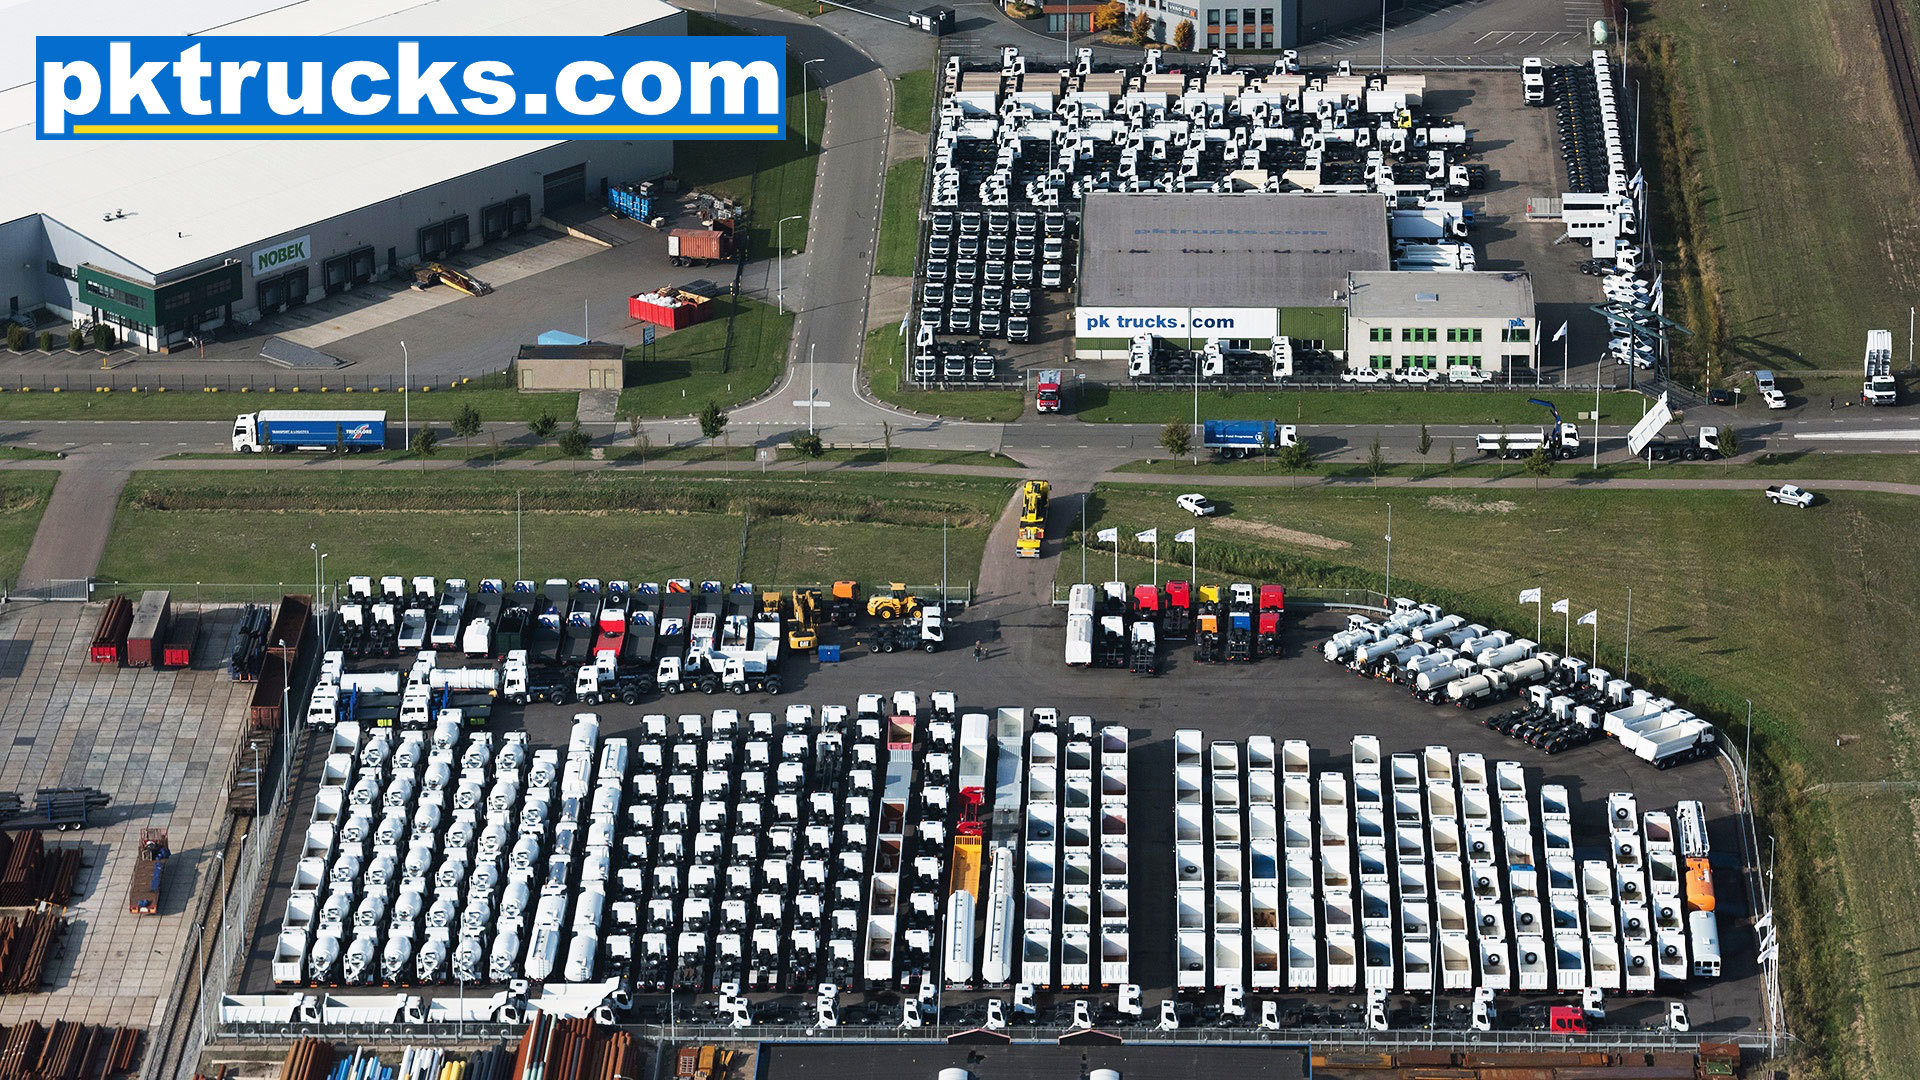 Pk trucks holland undefined: obrázek 1